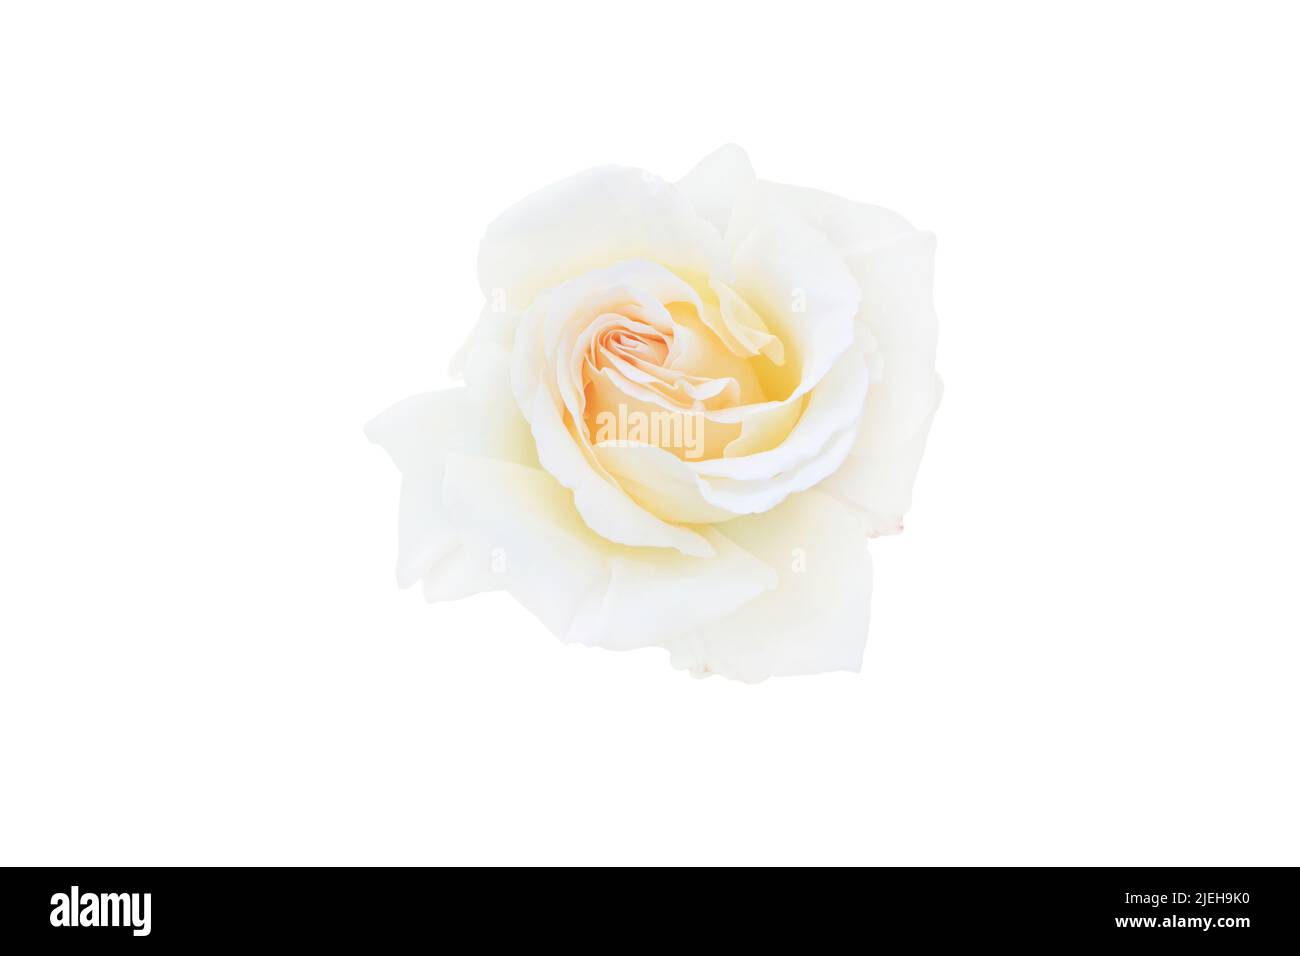 Gelb weiß Hybrid-Tee-Rose Blume isoliert auf weiß. Stockfoto